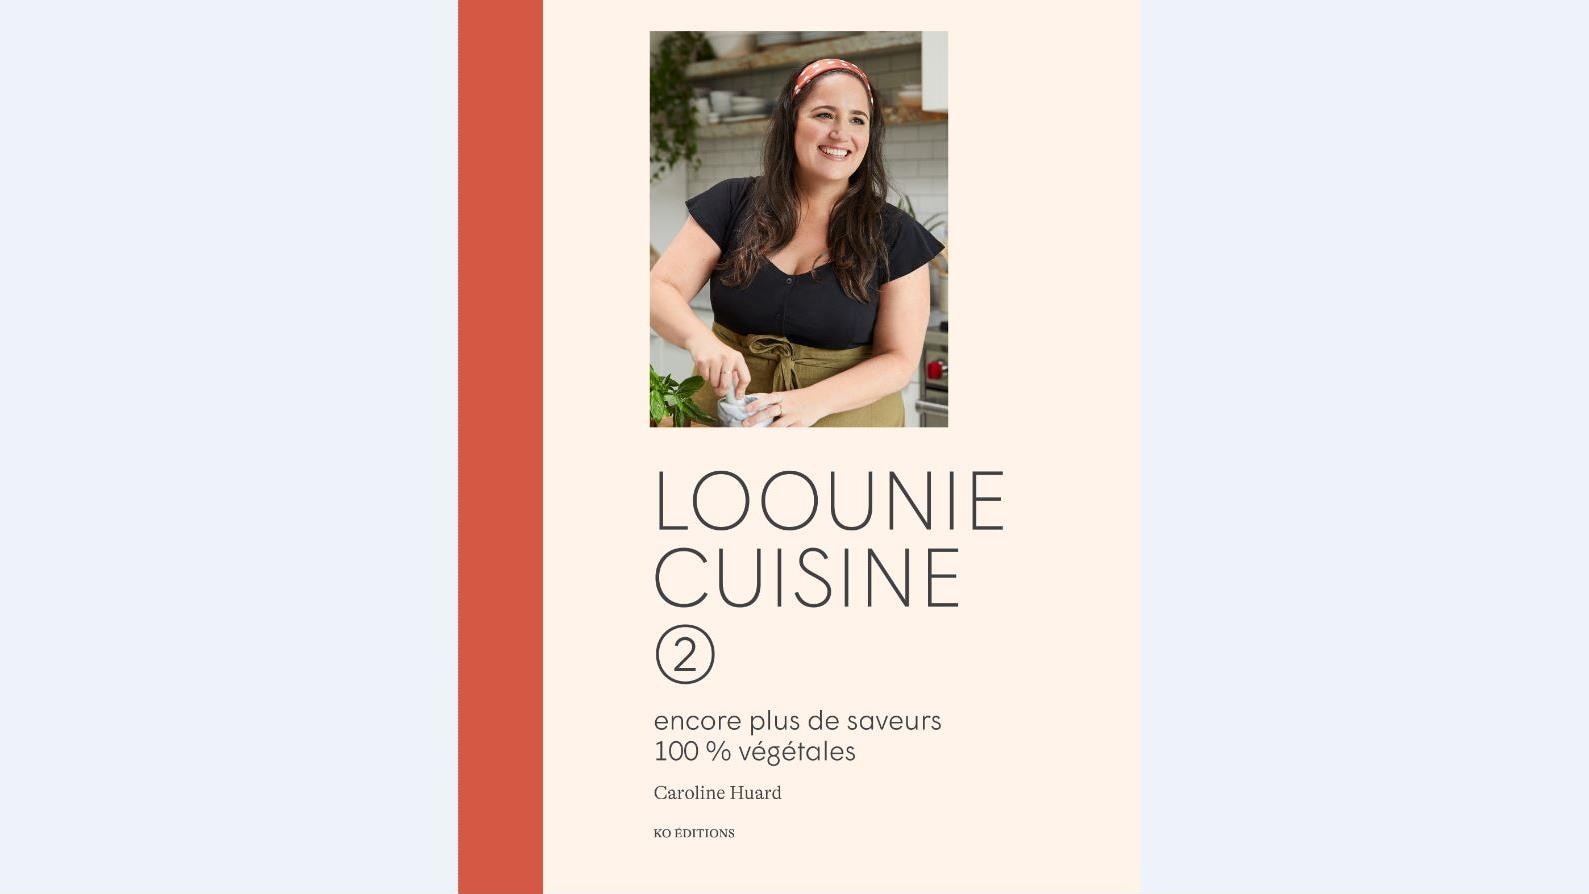 Les Bouchardises  :  un nouveau livre de cuisine pour Loounie
Les Bouchardises  :  un nouveau livre de cuisine pour Loounie